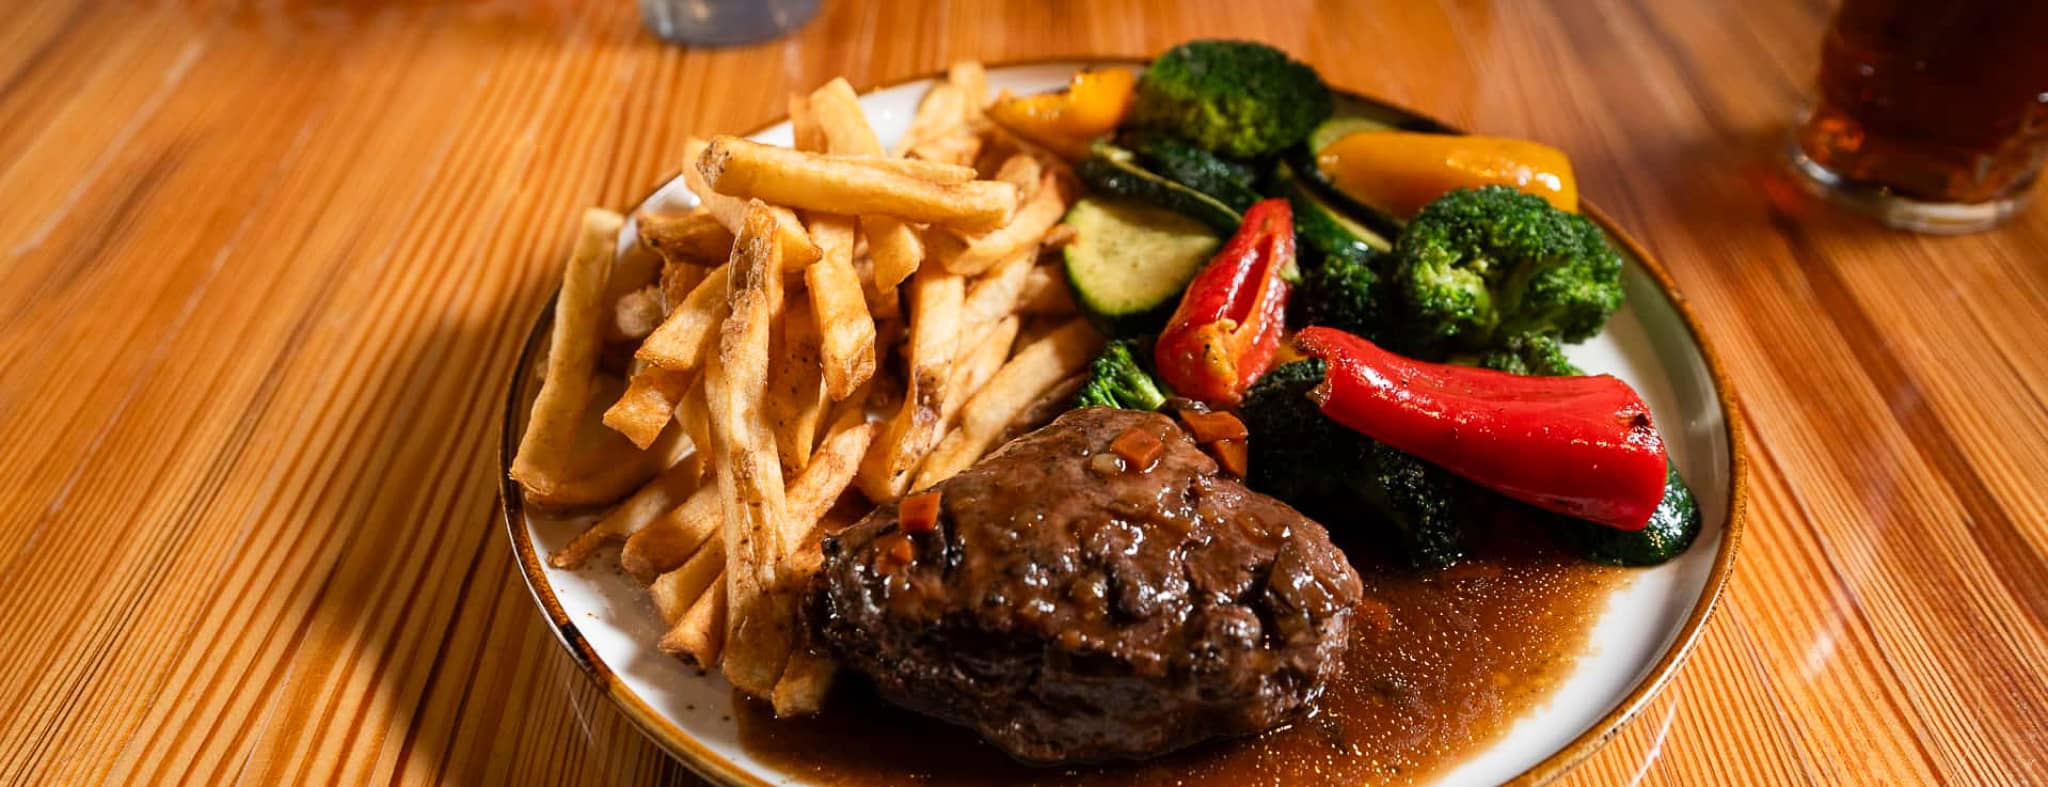 Une assiette de steak avec frite et légumes grillées